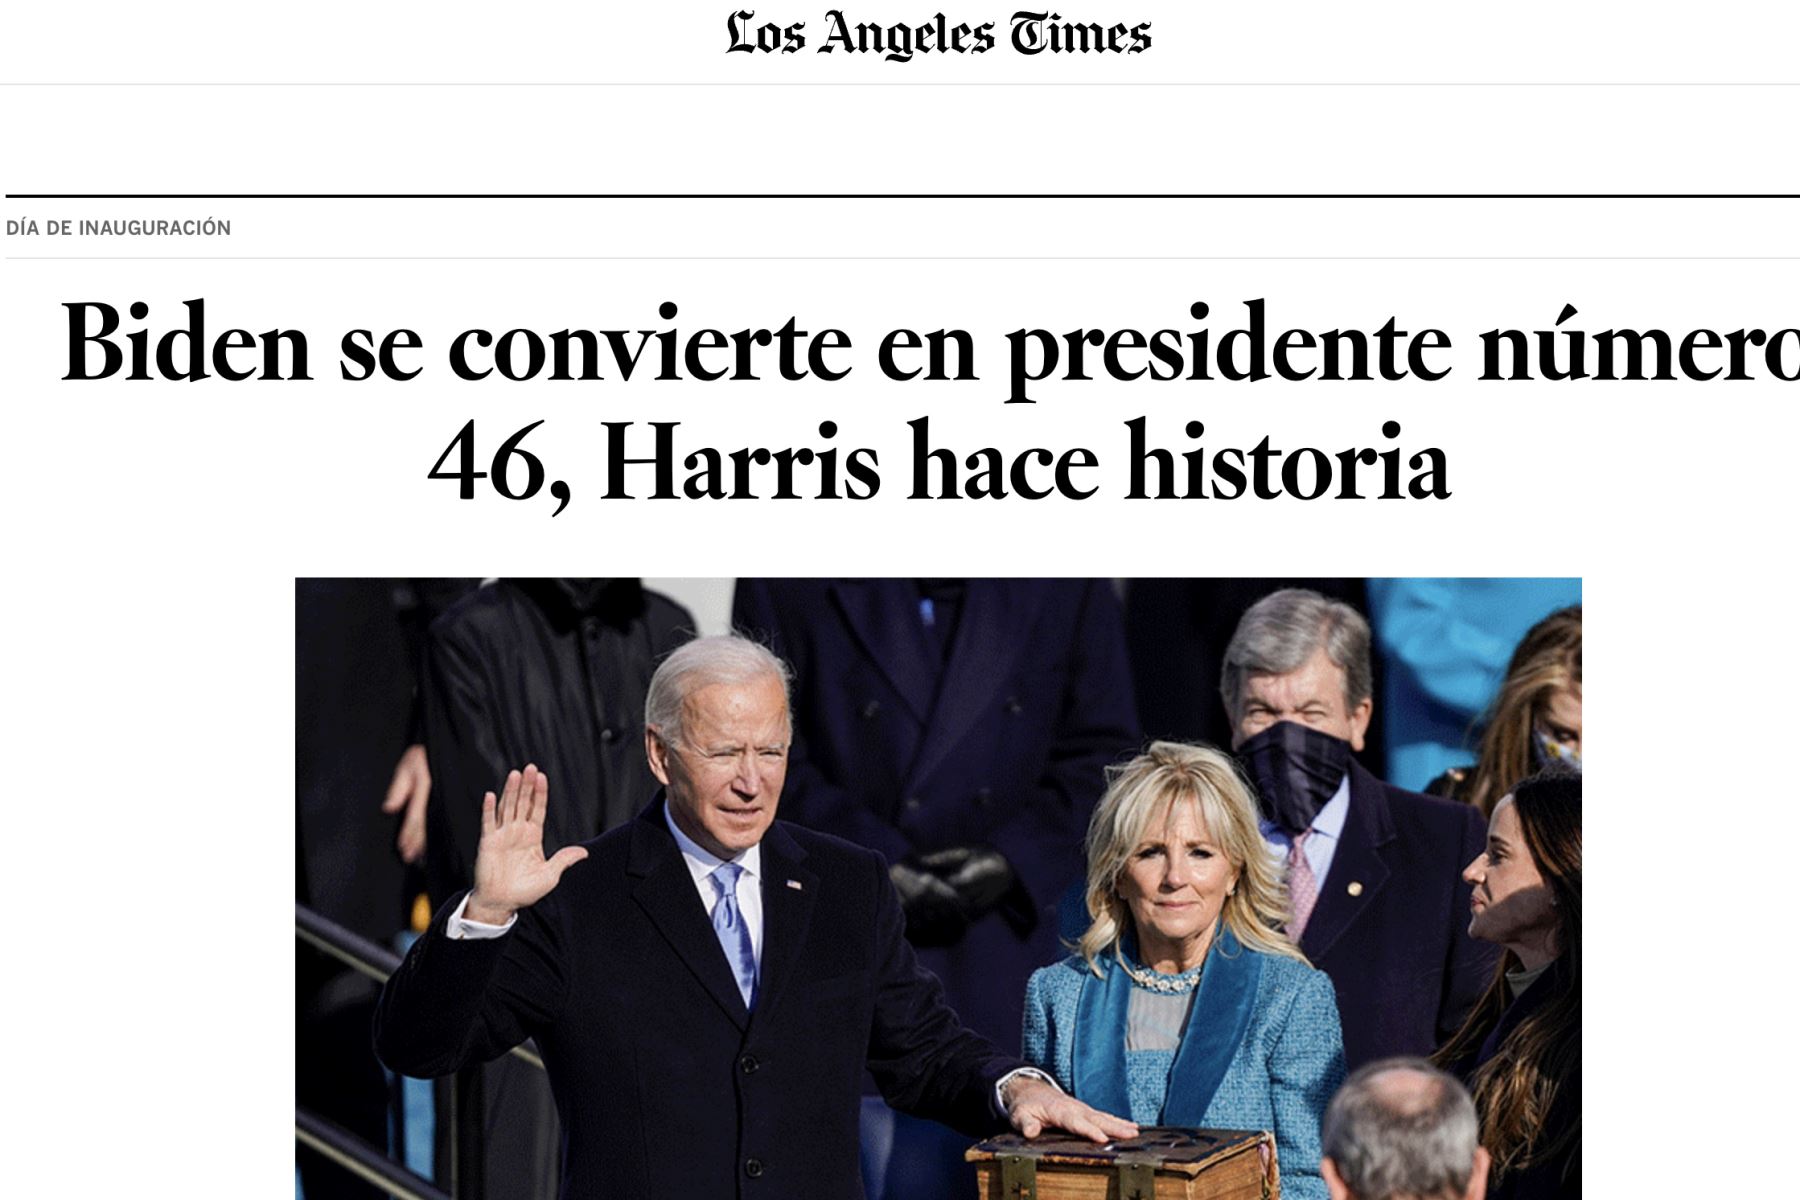 Así informa la prensa mundial sobre la histórica juramentación de Joe Biden, como presidente de los Estados Unidos. Los Angeles Times.